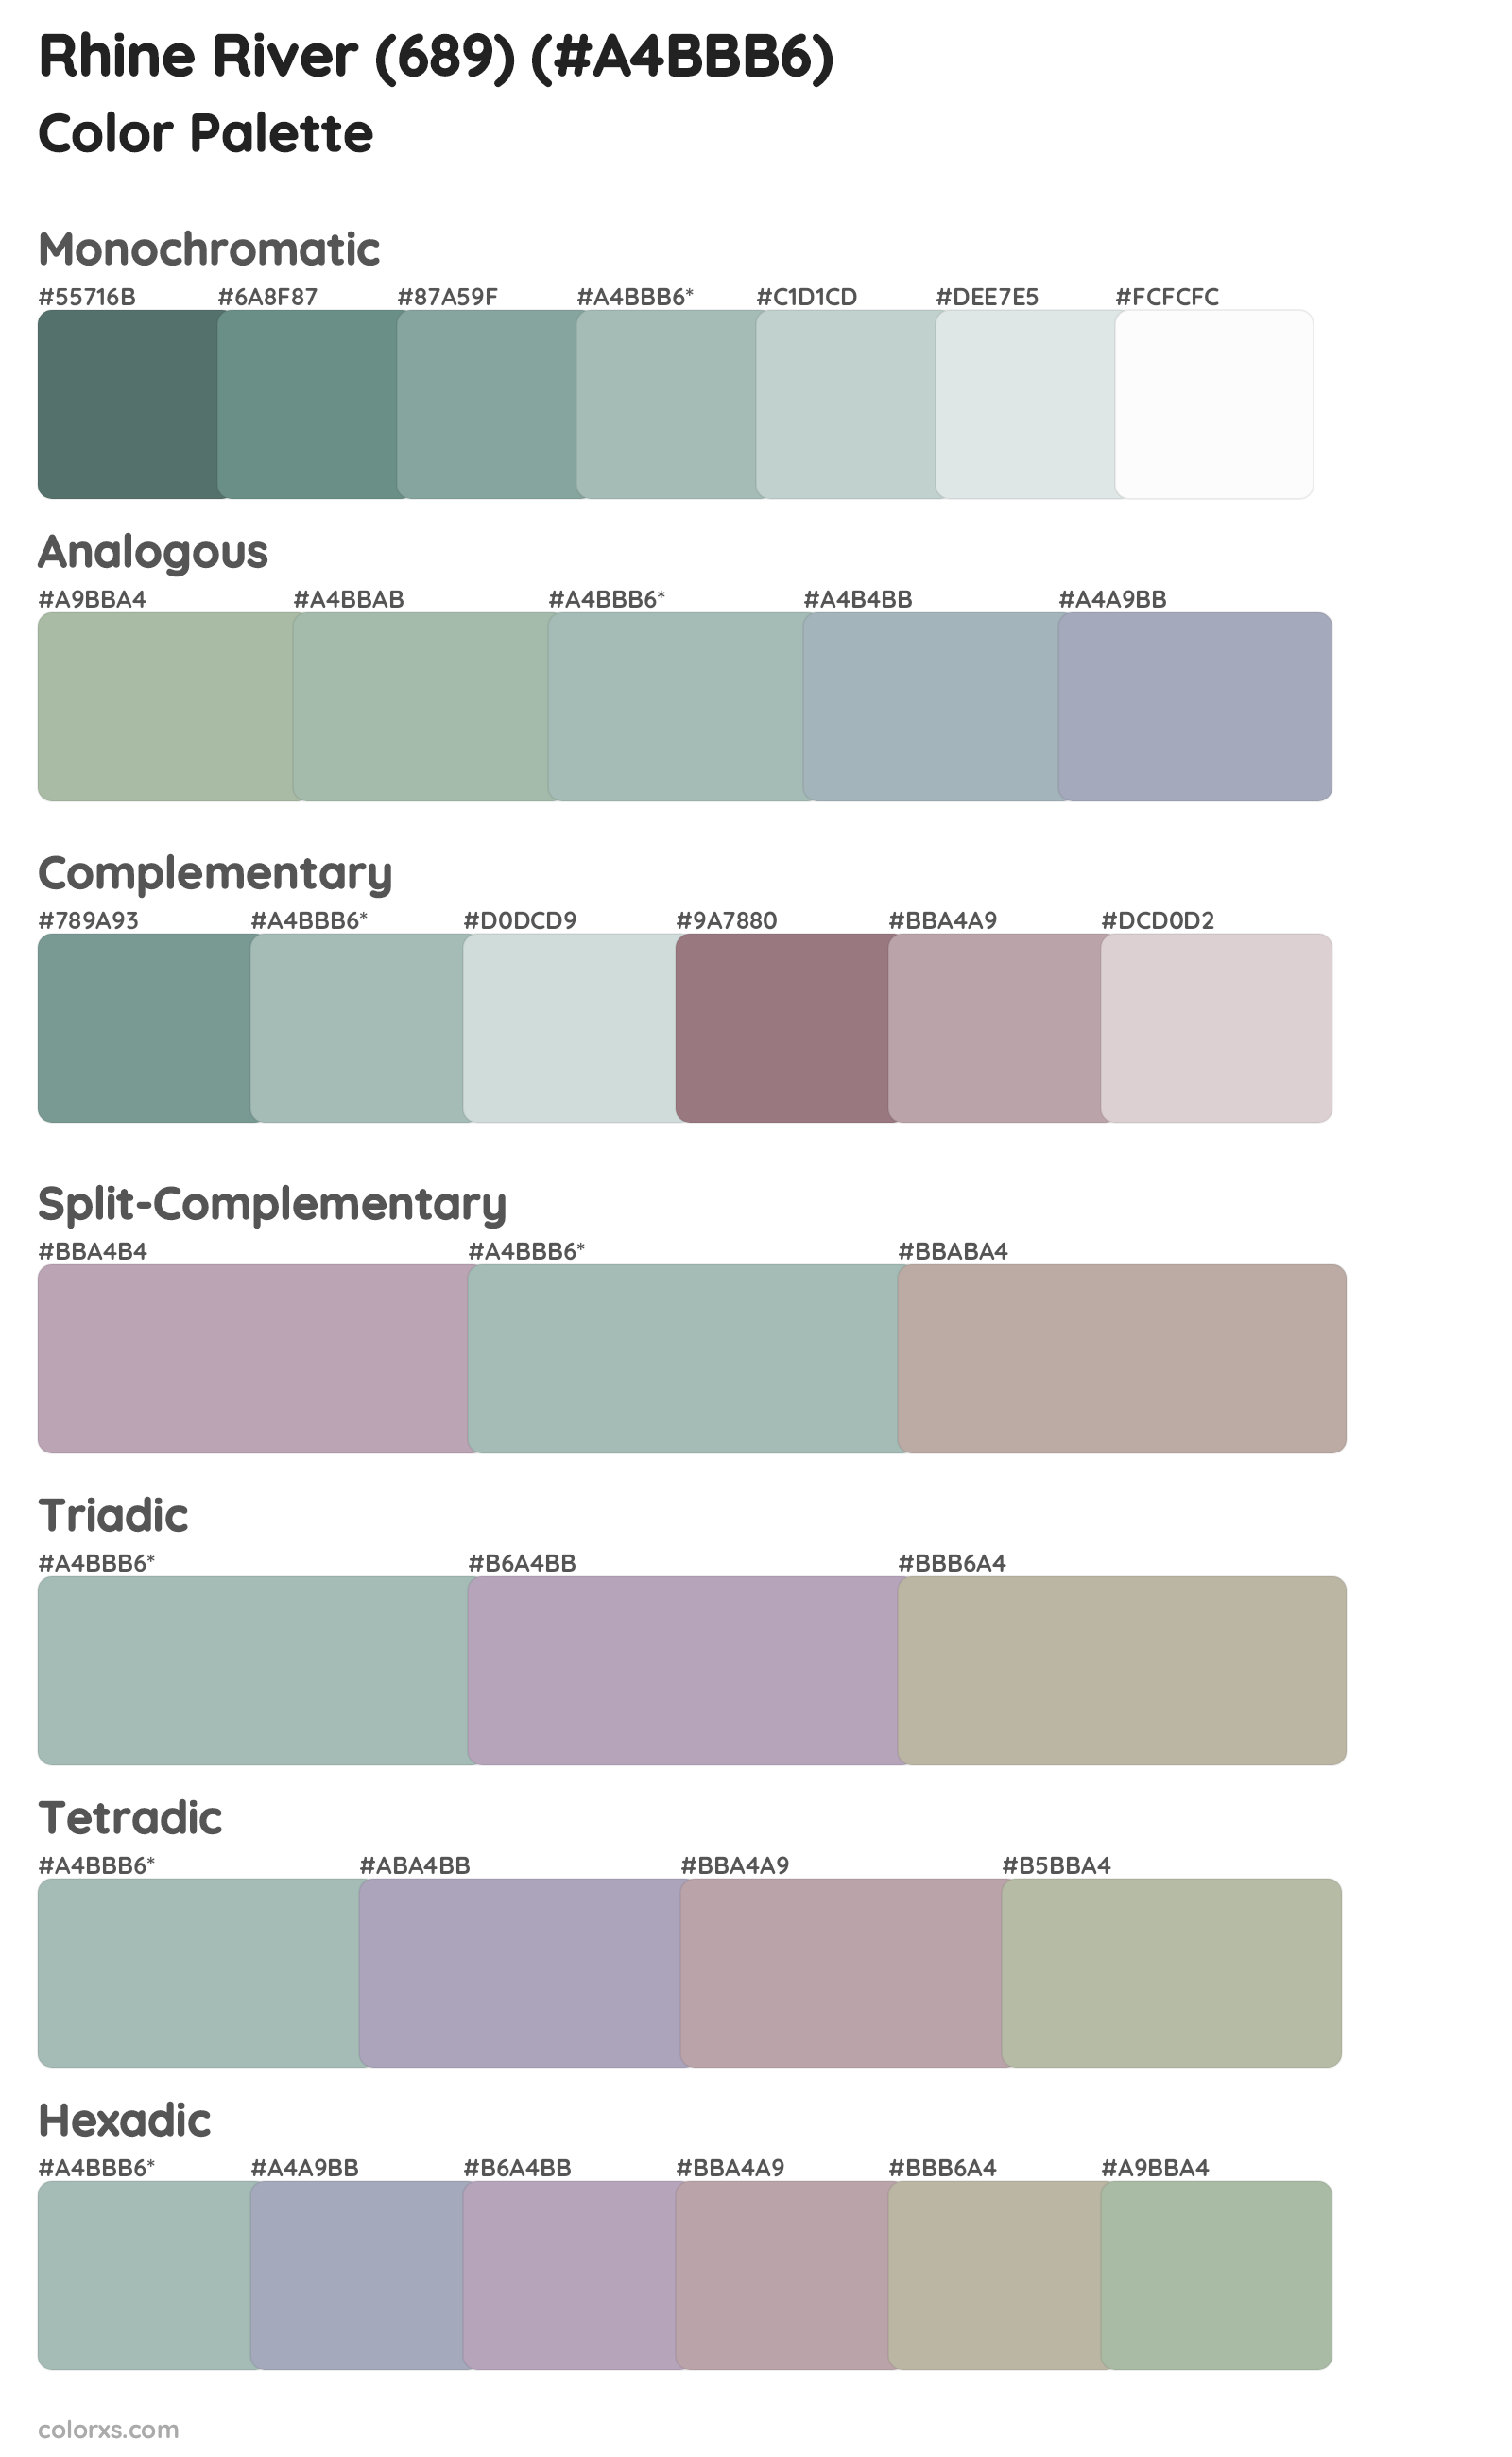 Rhine River (689) Color Scheme Palettes